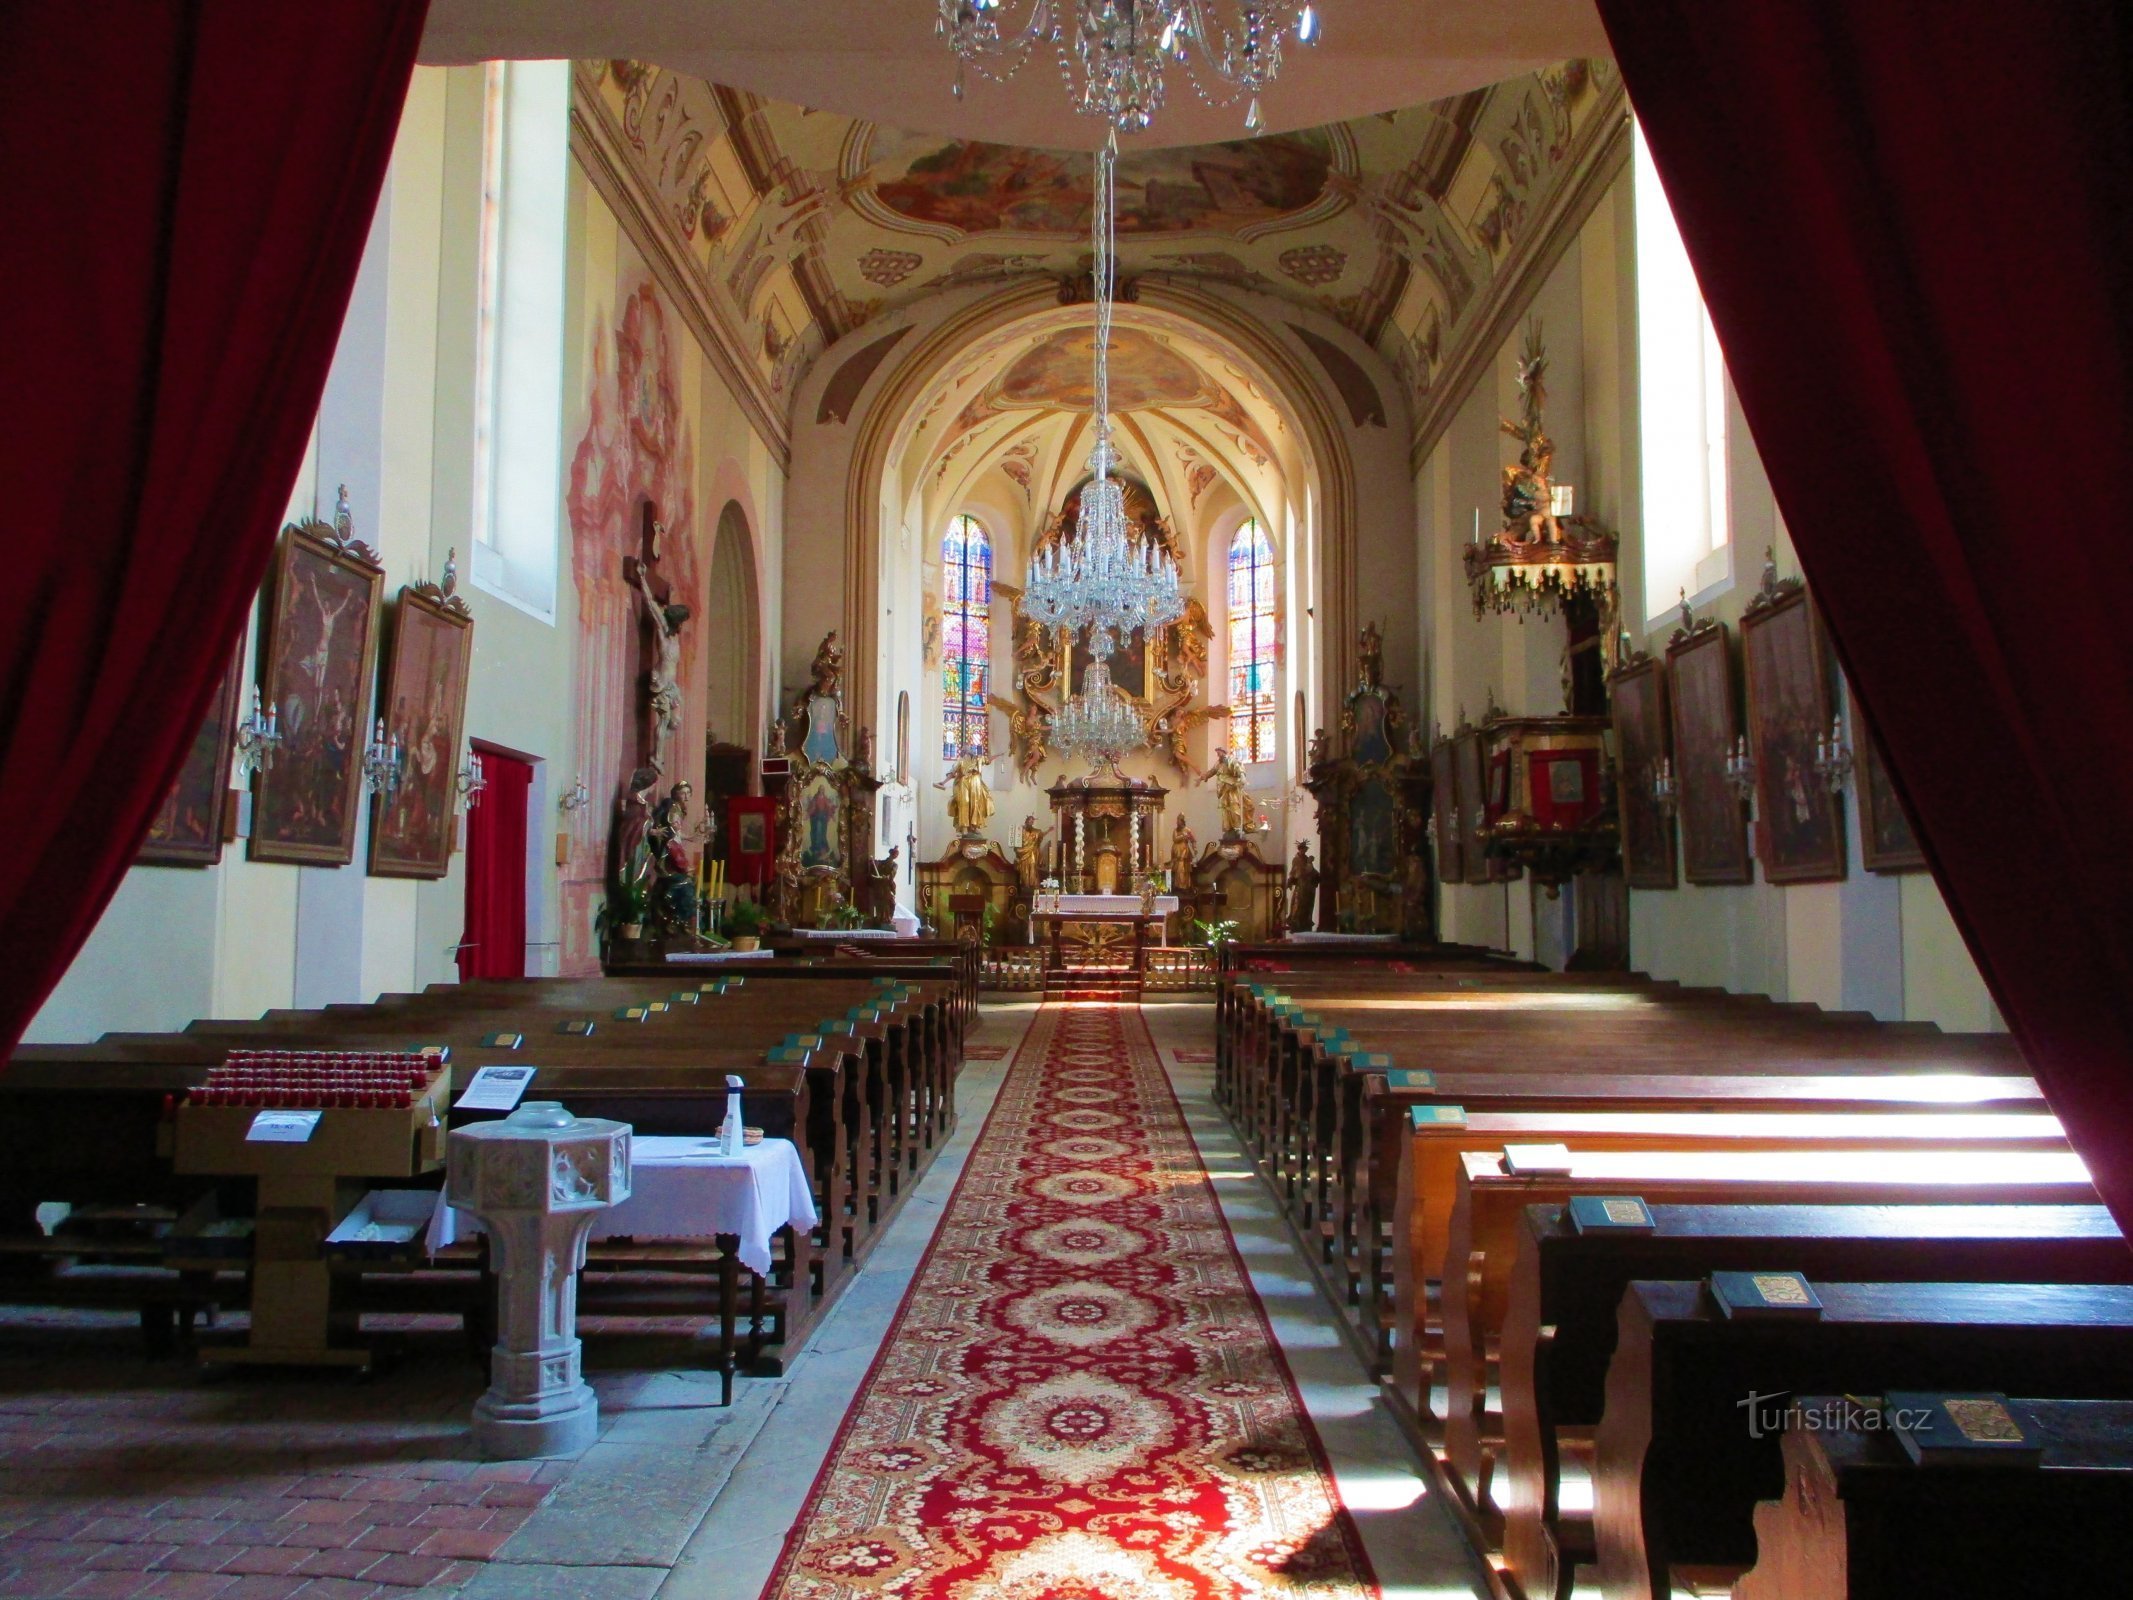 Kirche der Heiligen Dreifaltigkeit (Sezemice)